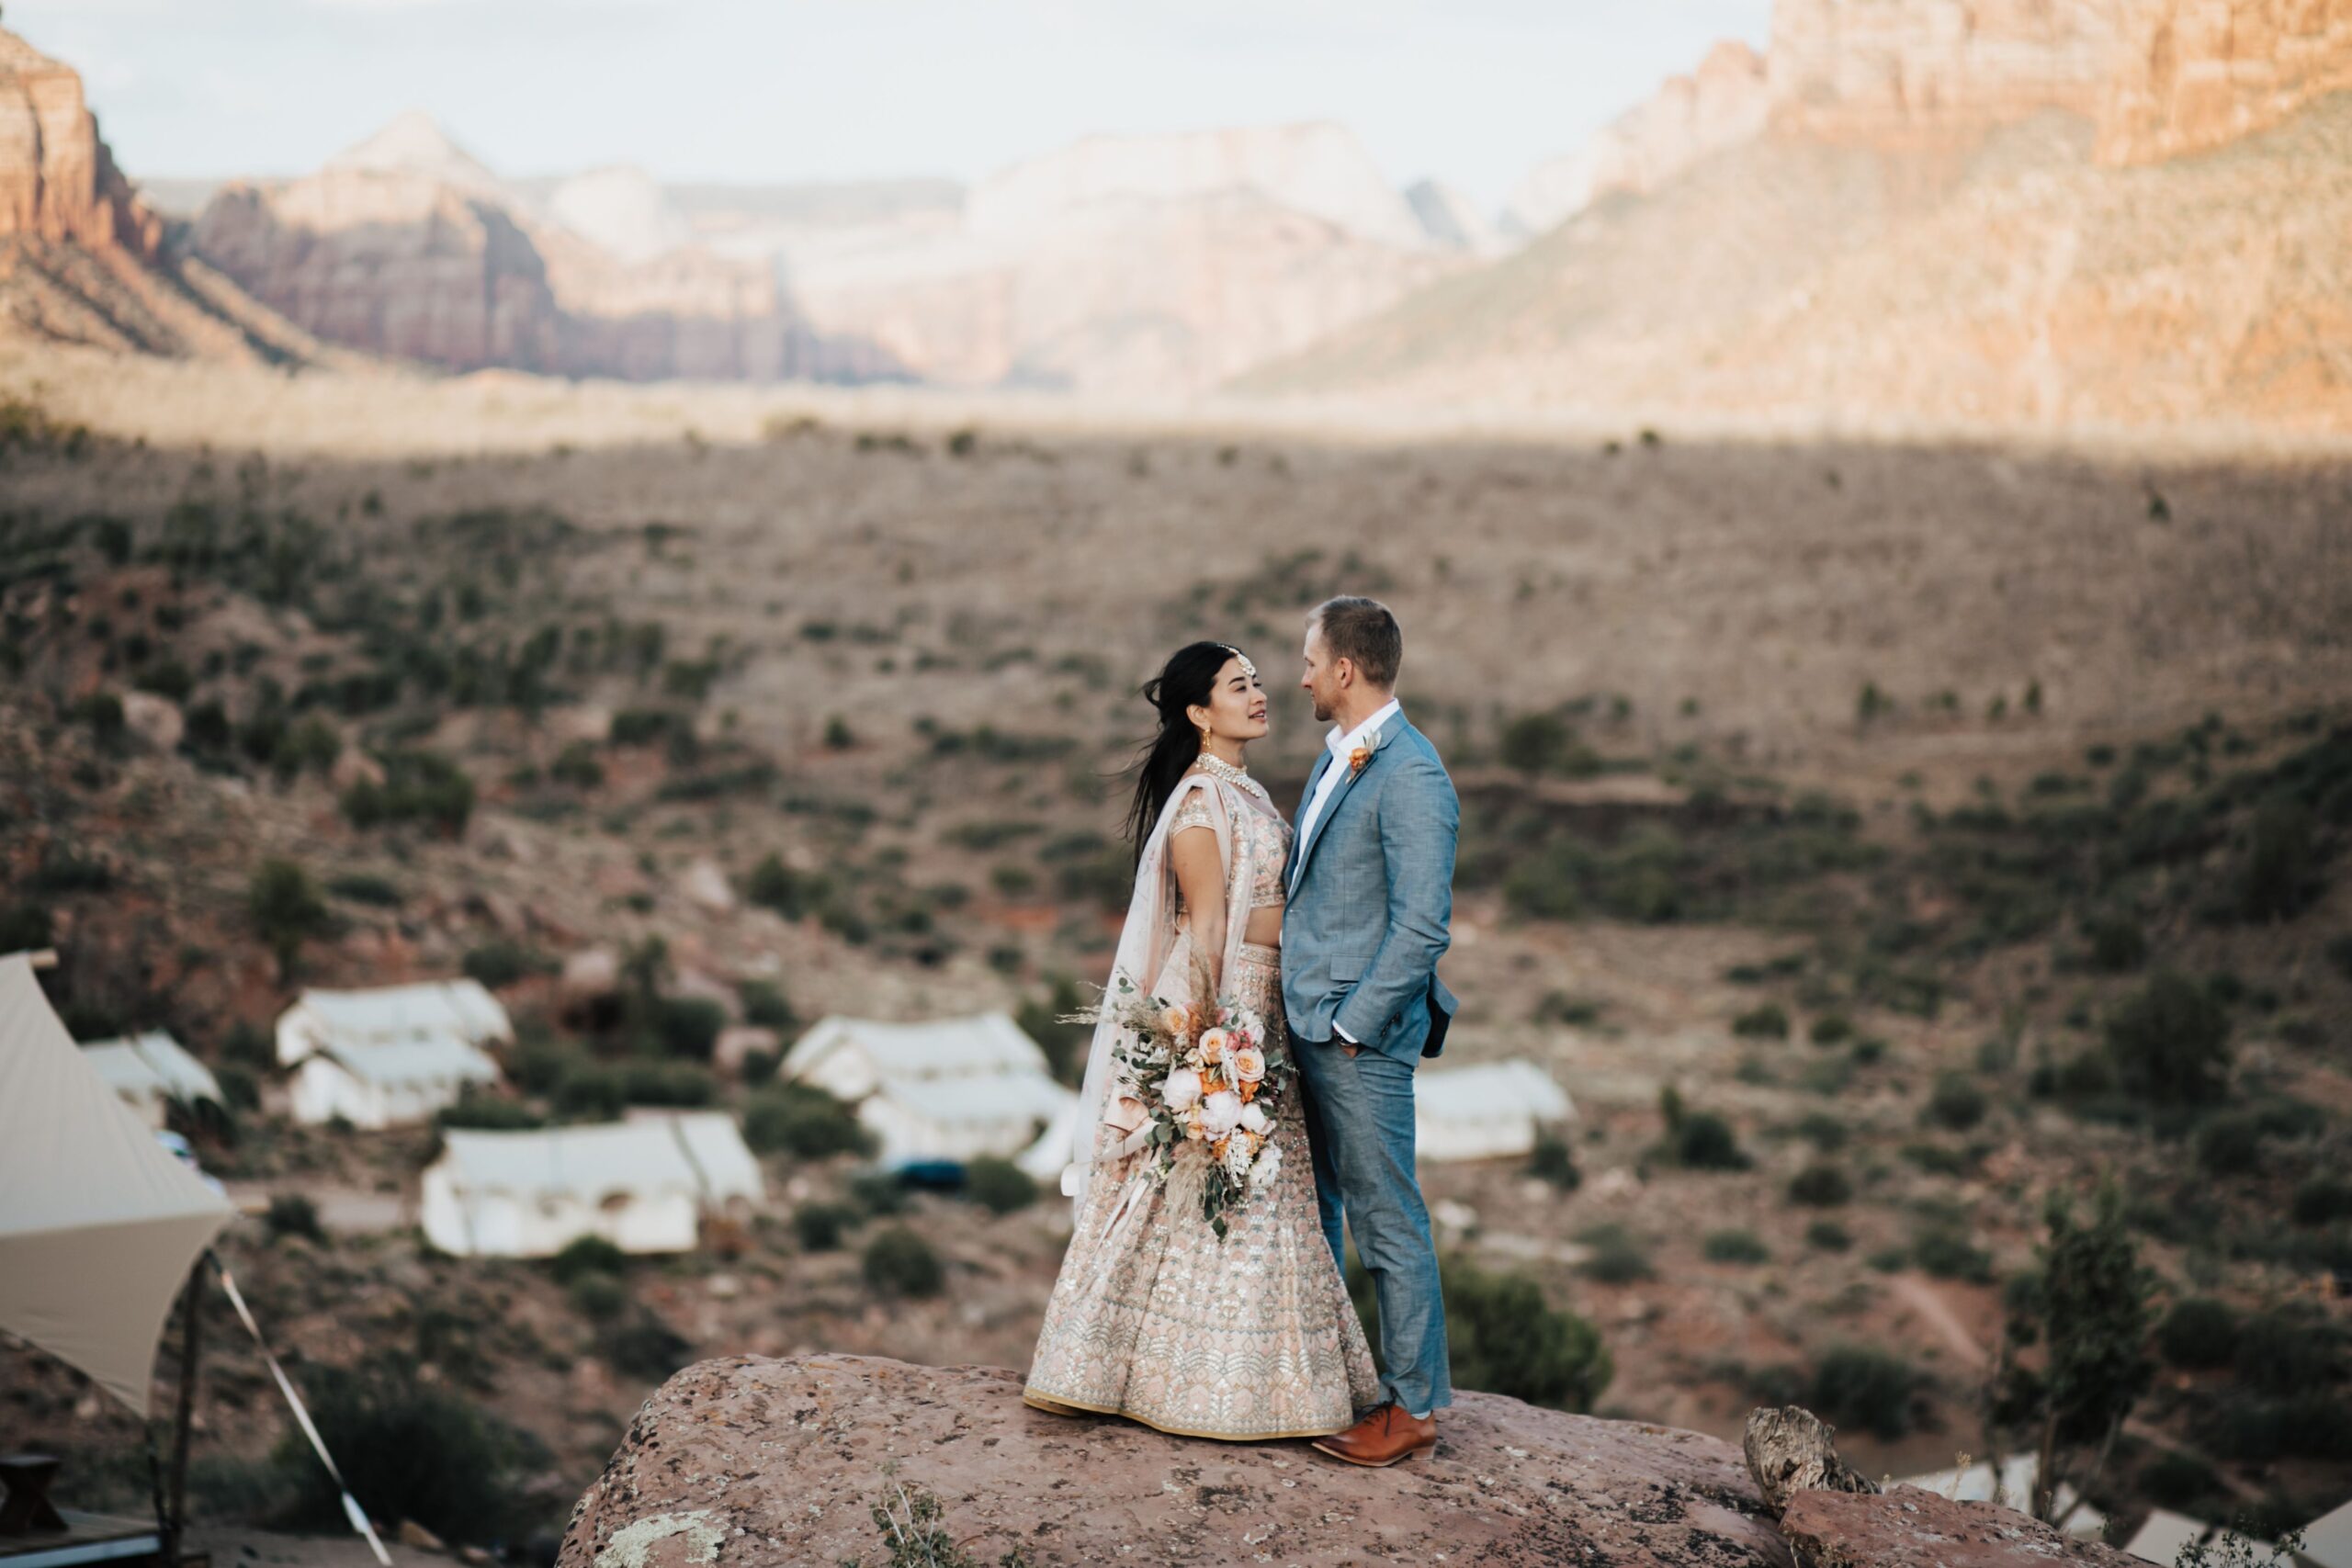 Indian American Wedding in the Utah desert